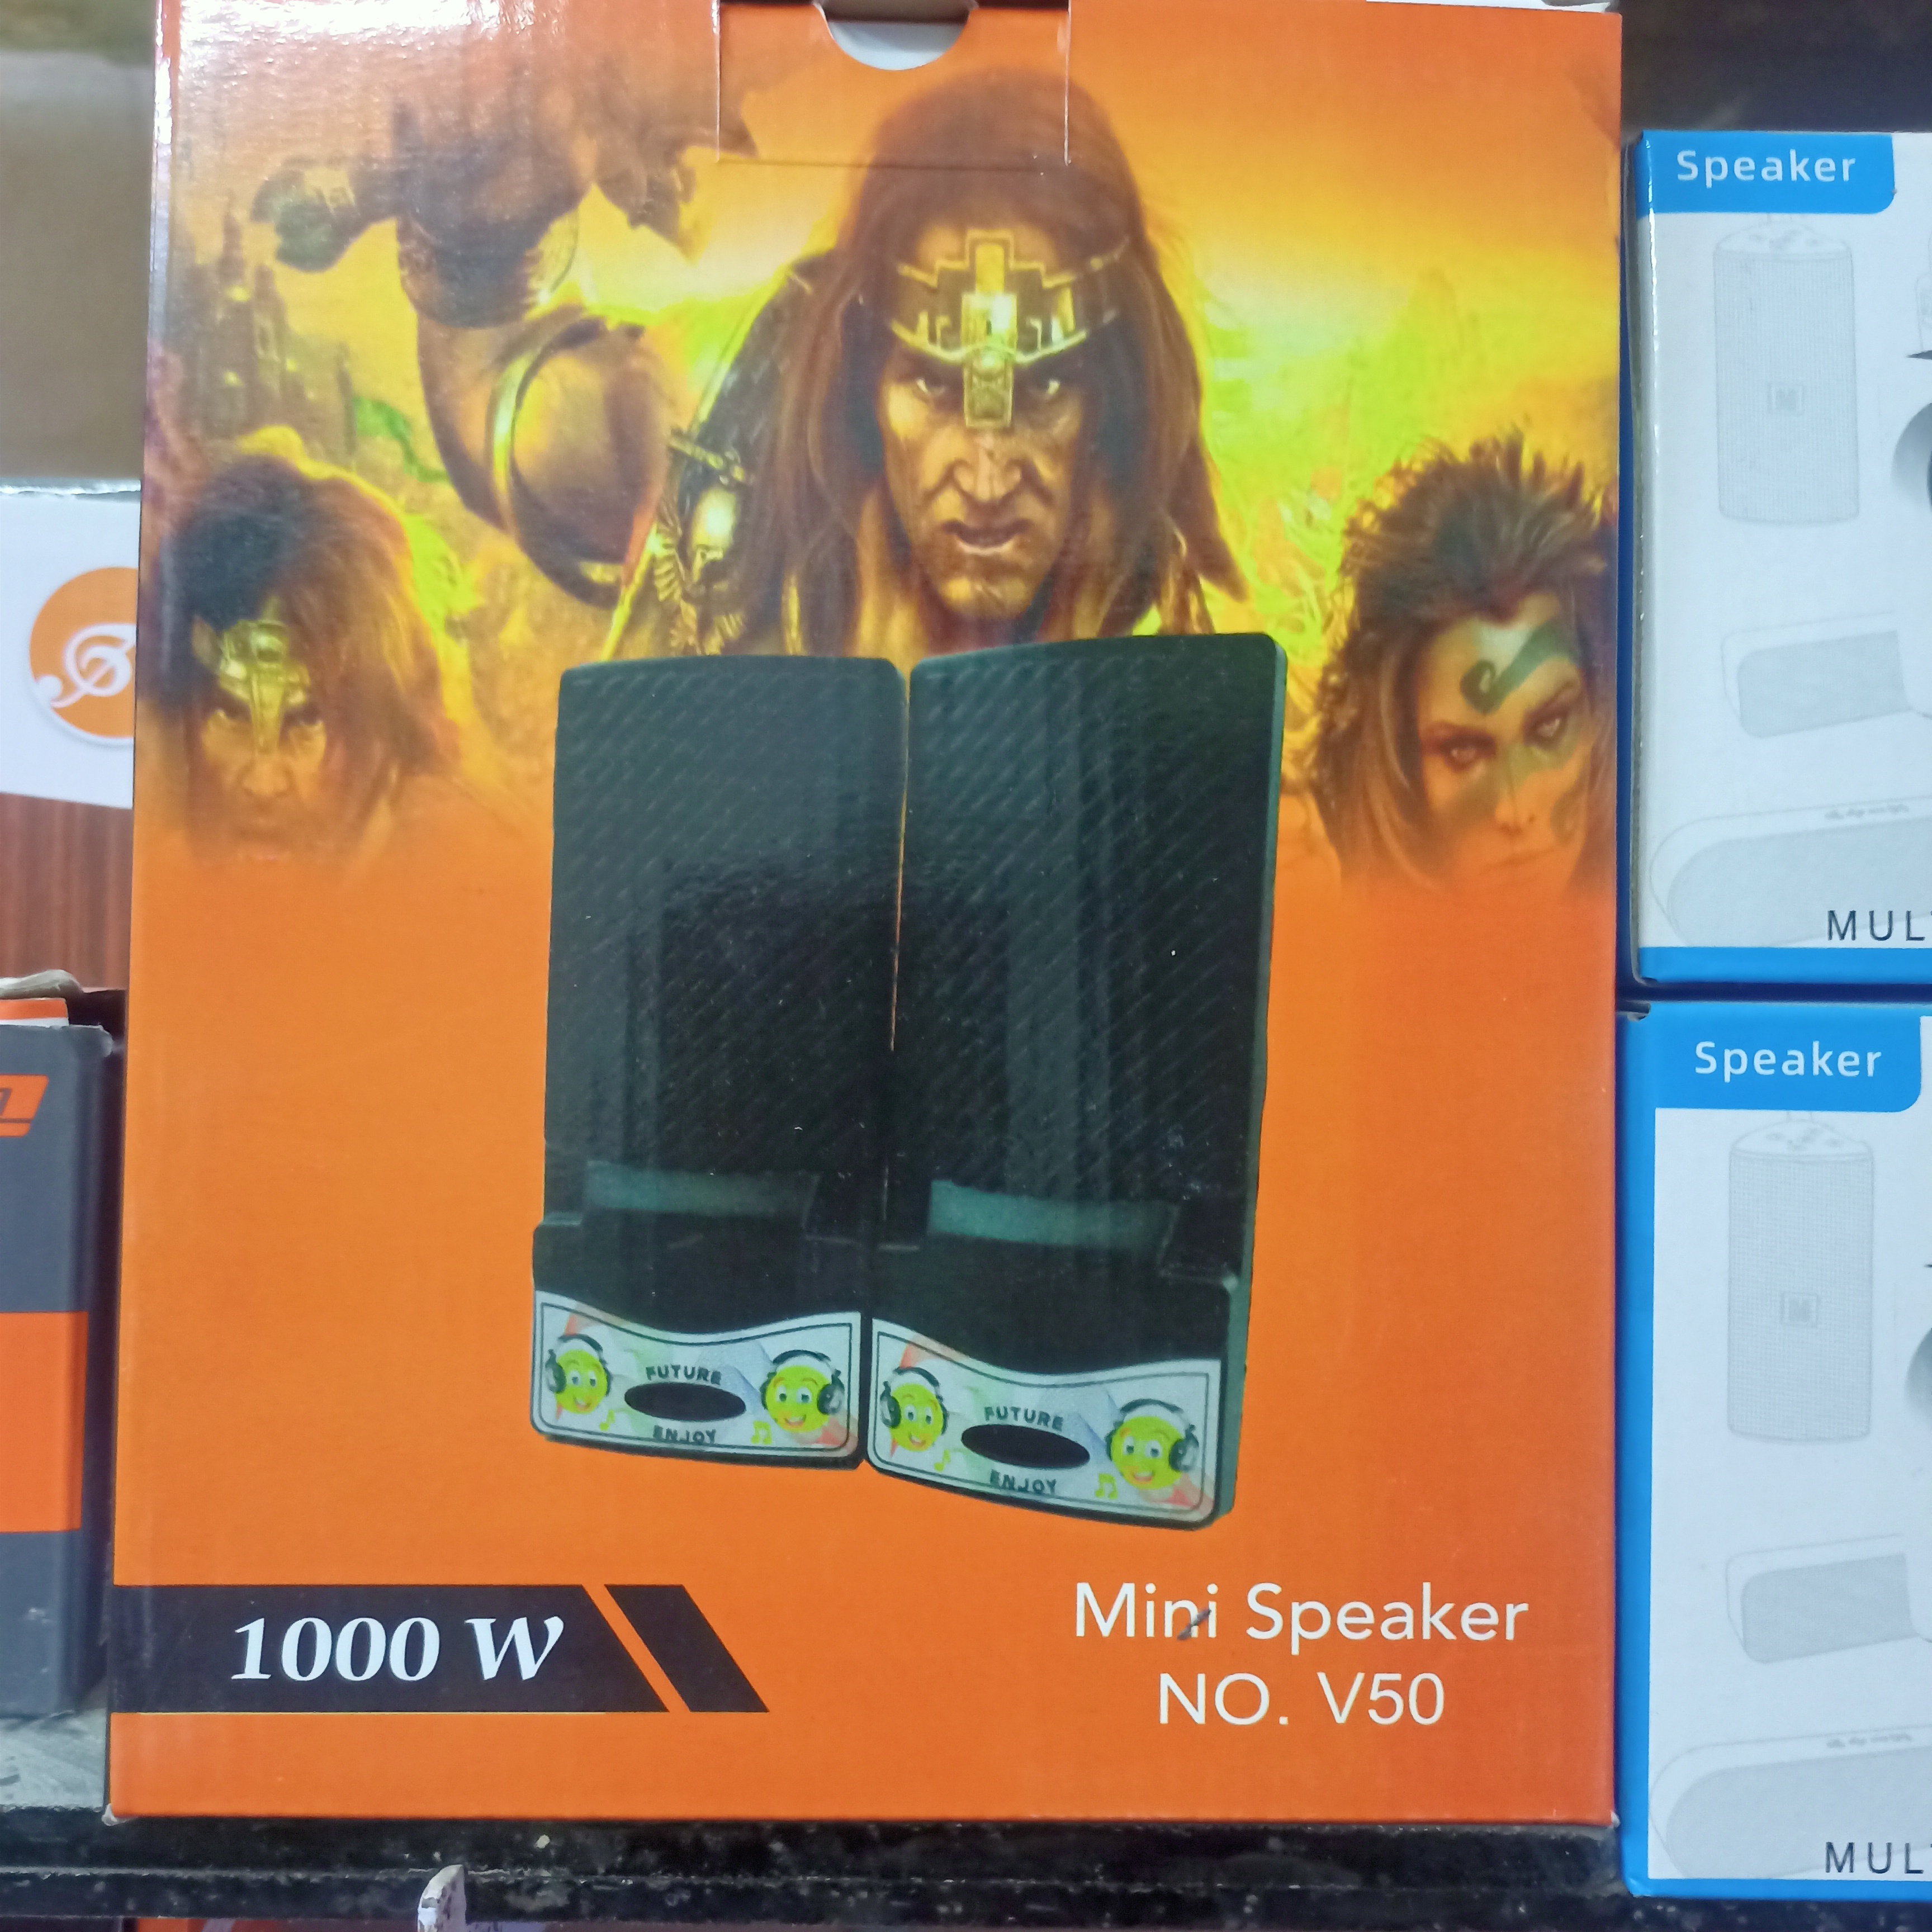 Speaker Mini NO. V50